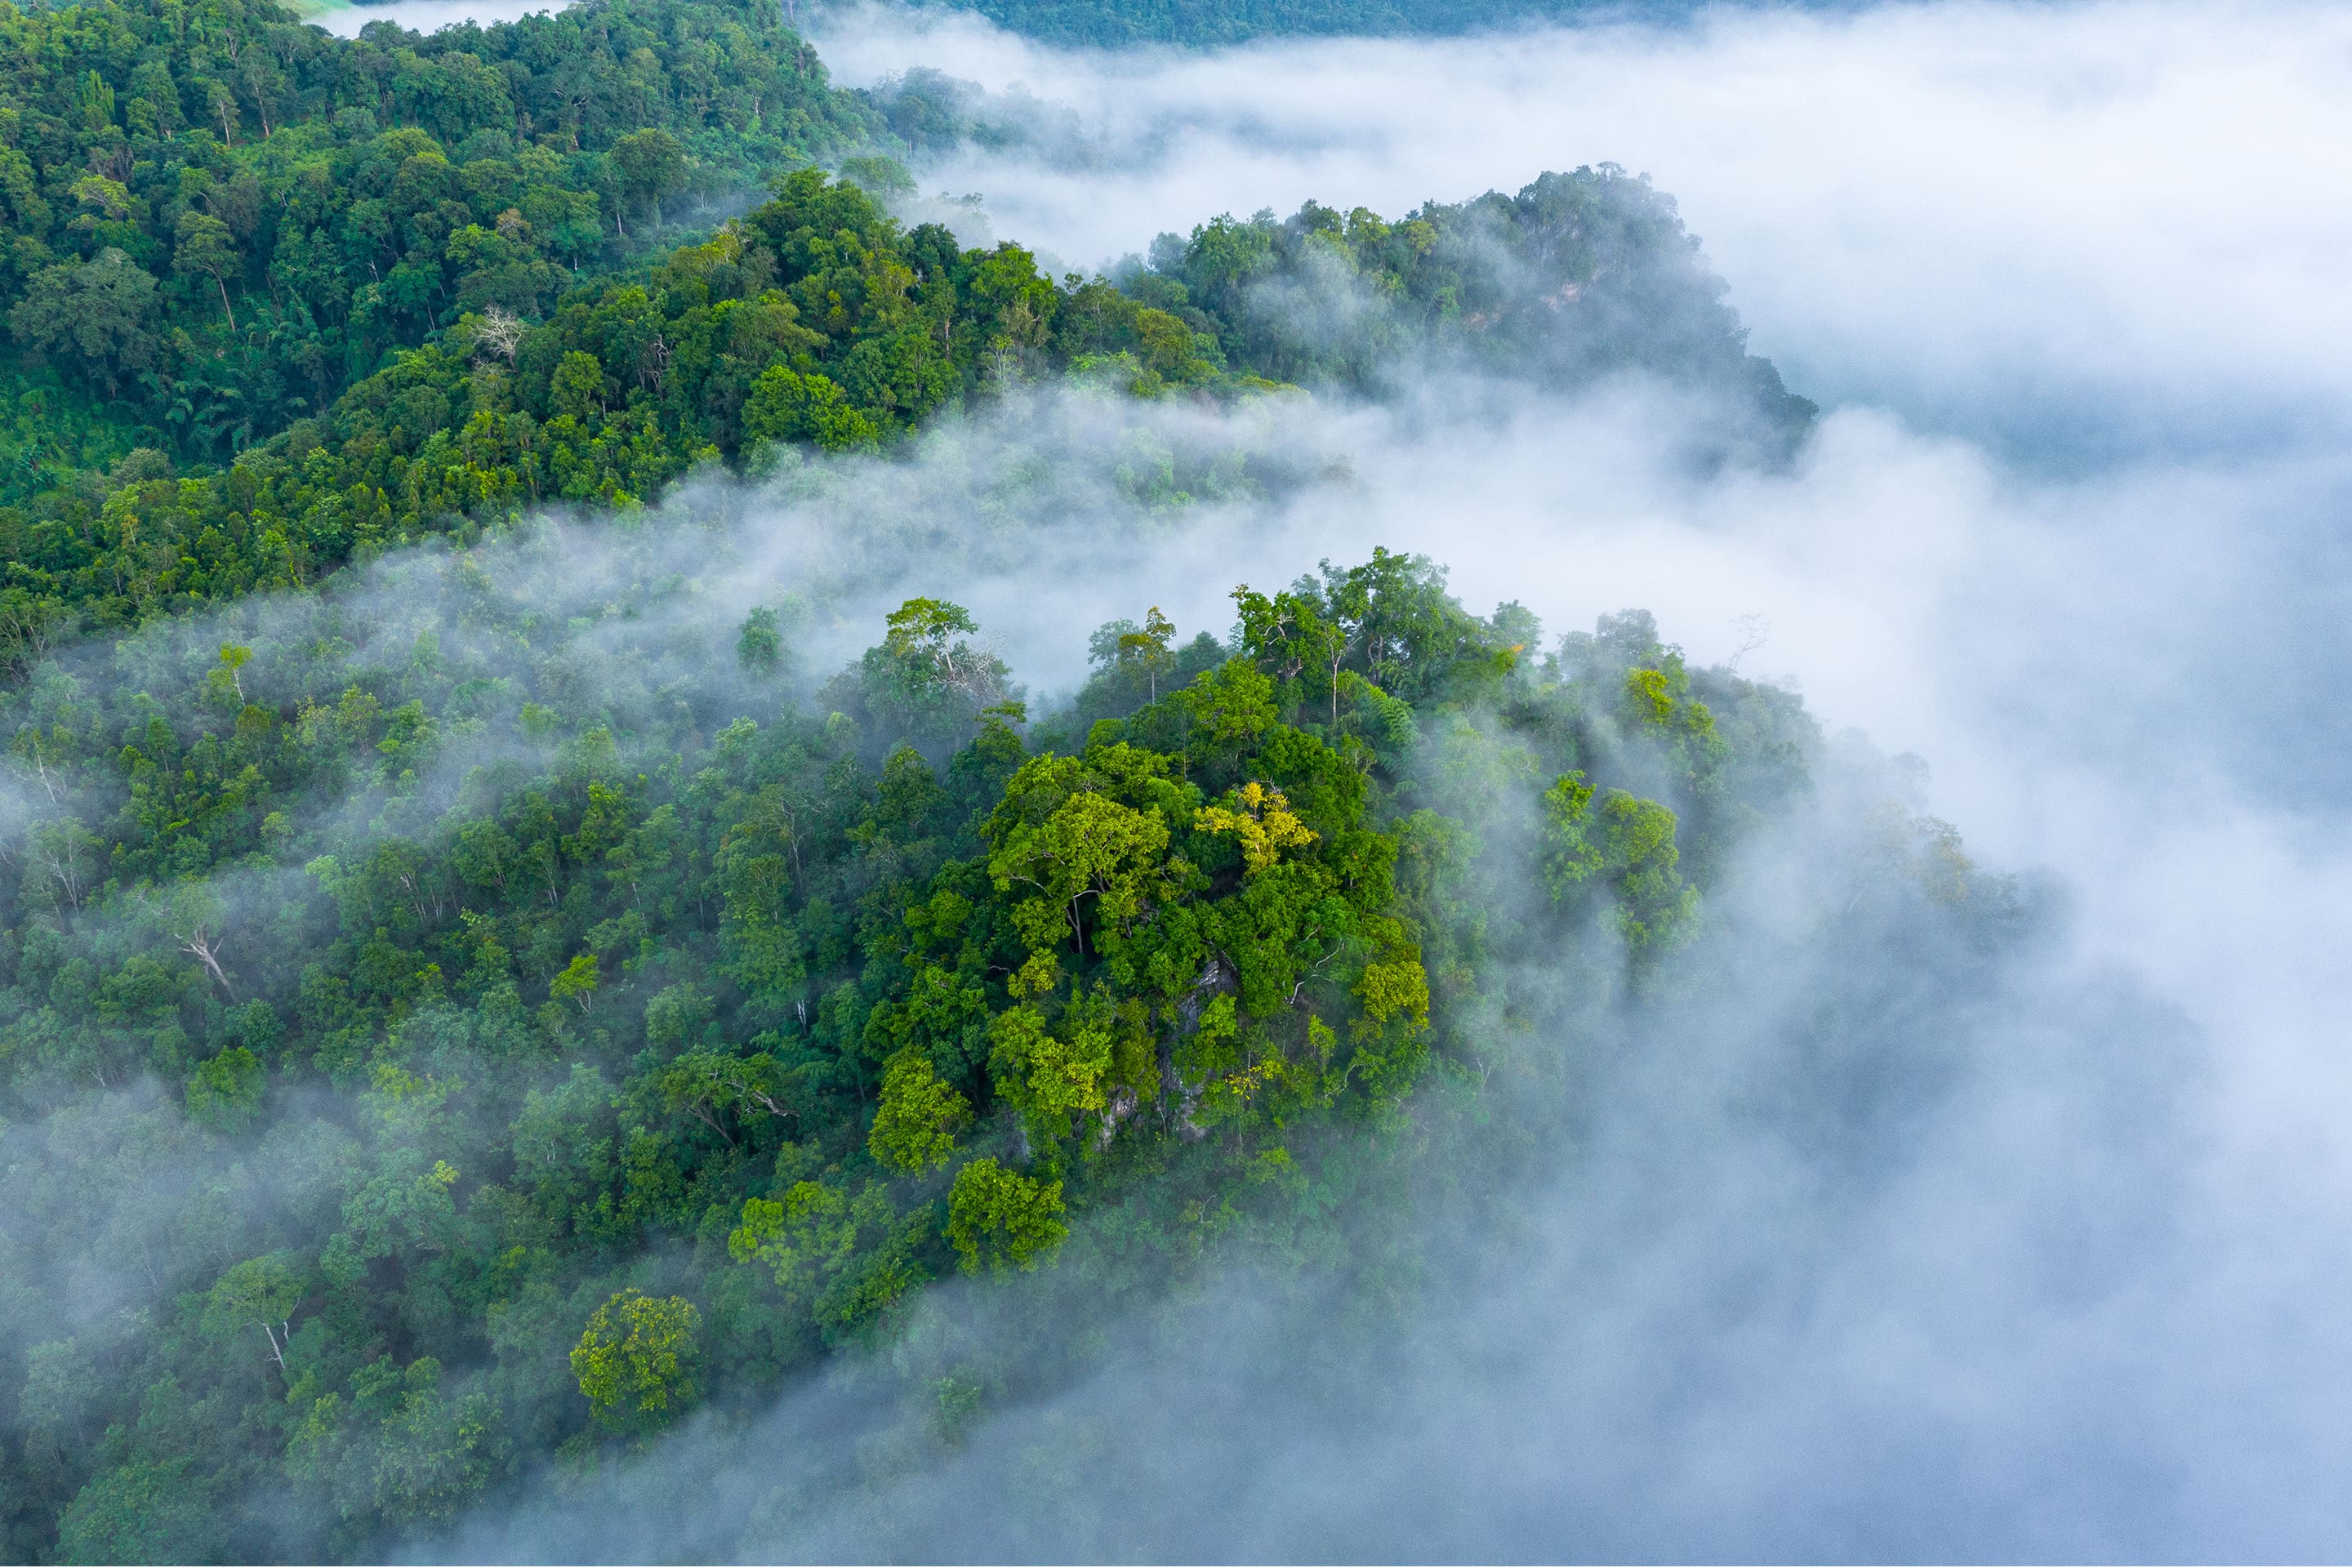 Vista aerea di una lussureggiante foresta verde avvolta nella nebbia bianca.